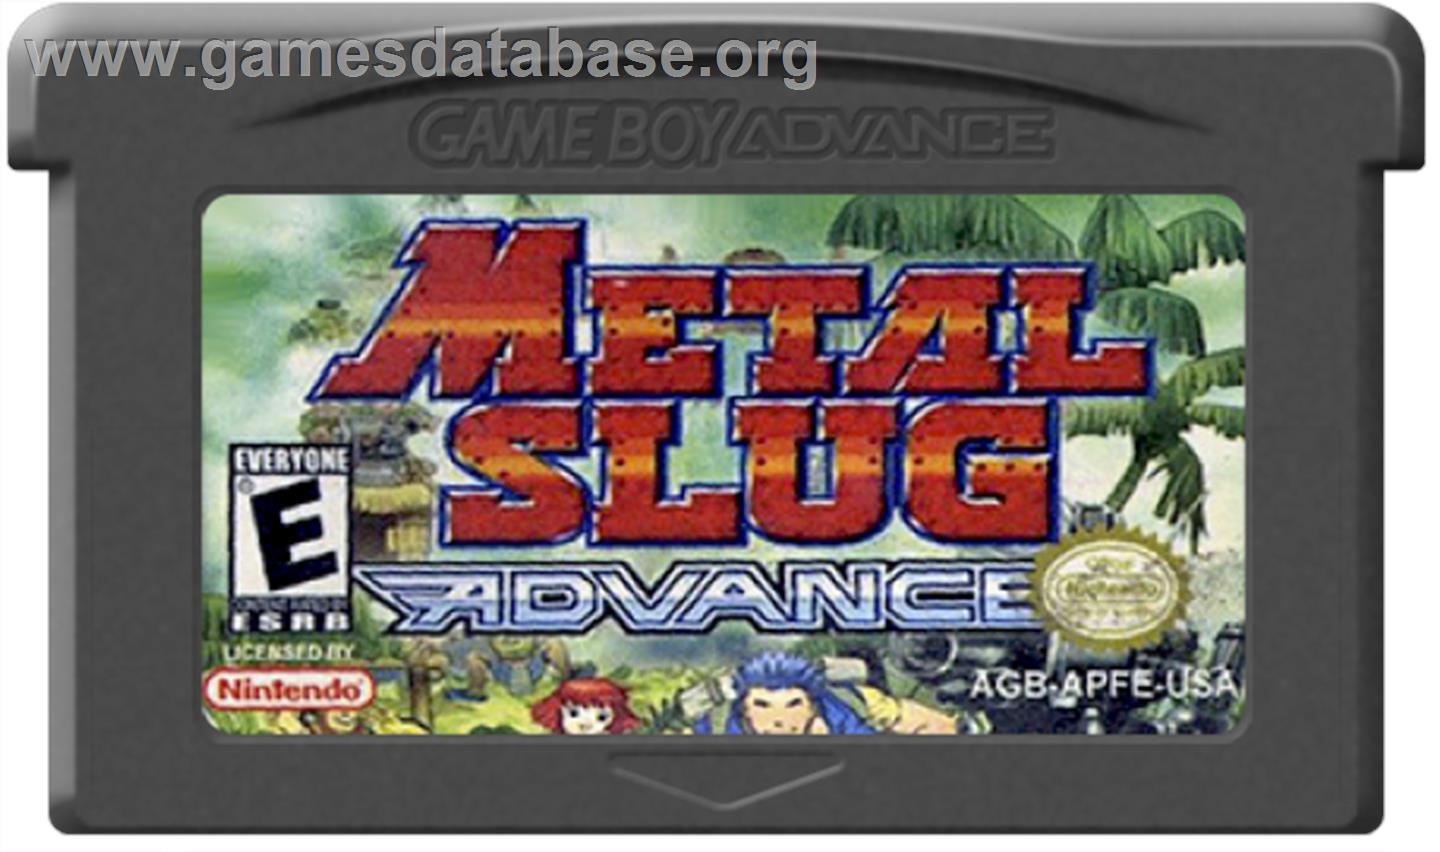 Metal Slug Advance - Nintendo Game Boy Advance - Artwork - Cartridge